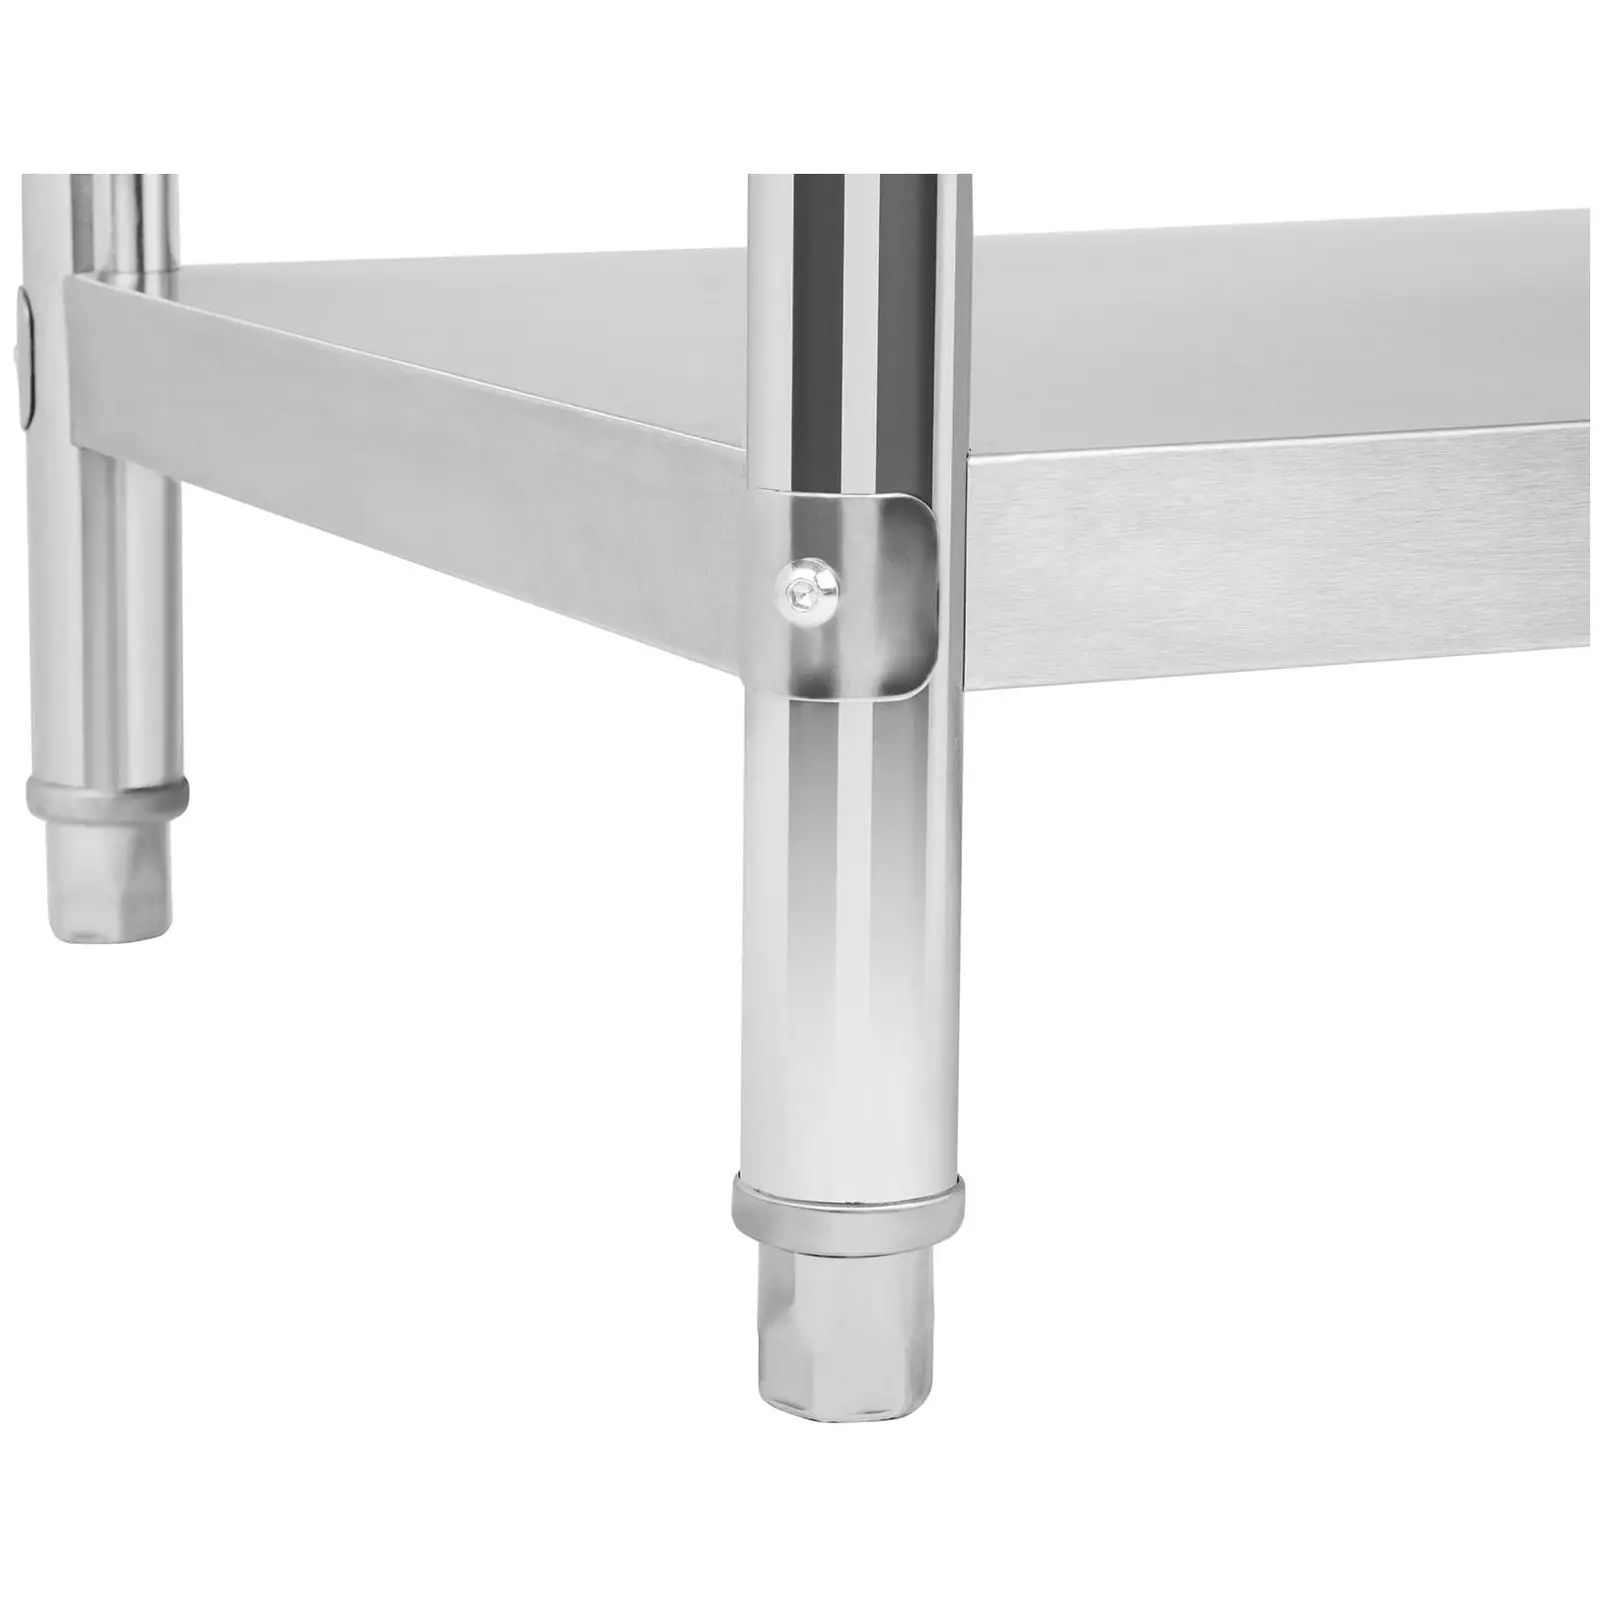 Pracovný stôl z ušľachtilej ocele - 200 x 60 cm - 195 kg nosnosť